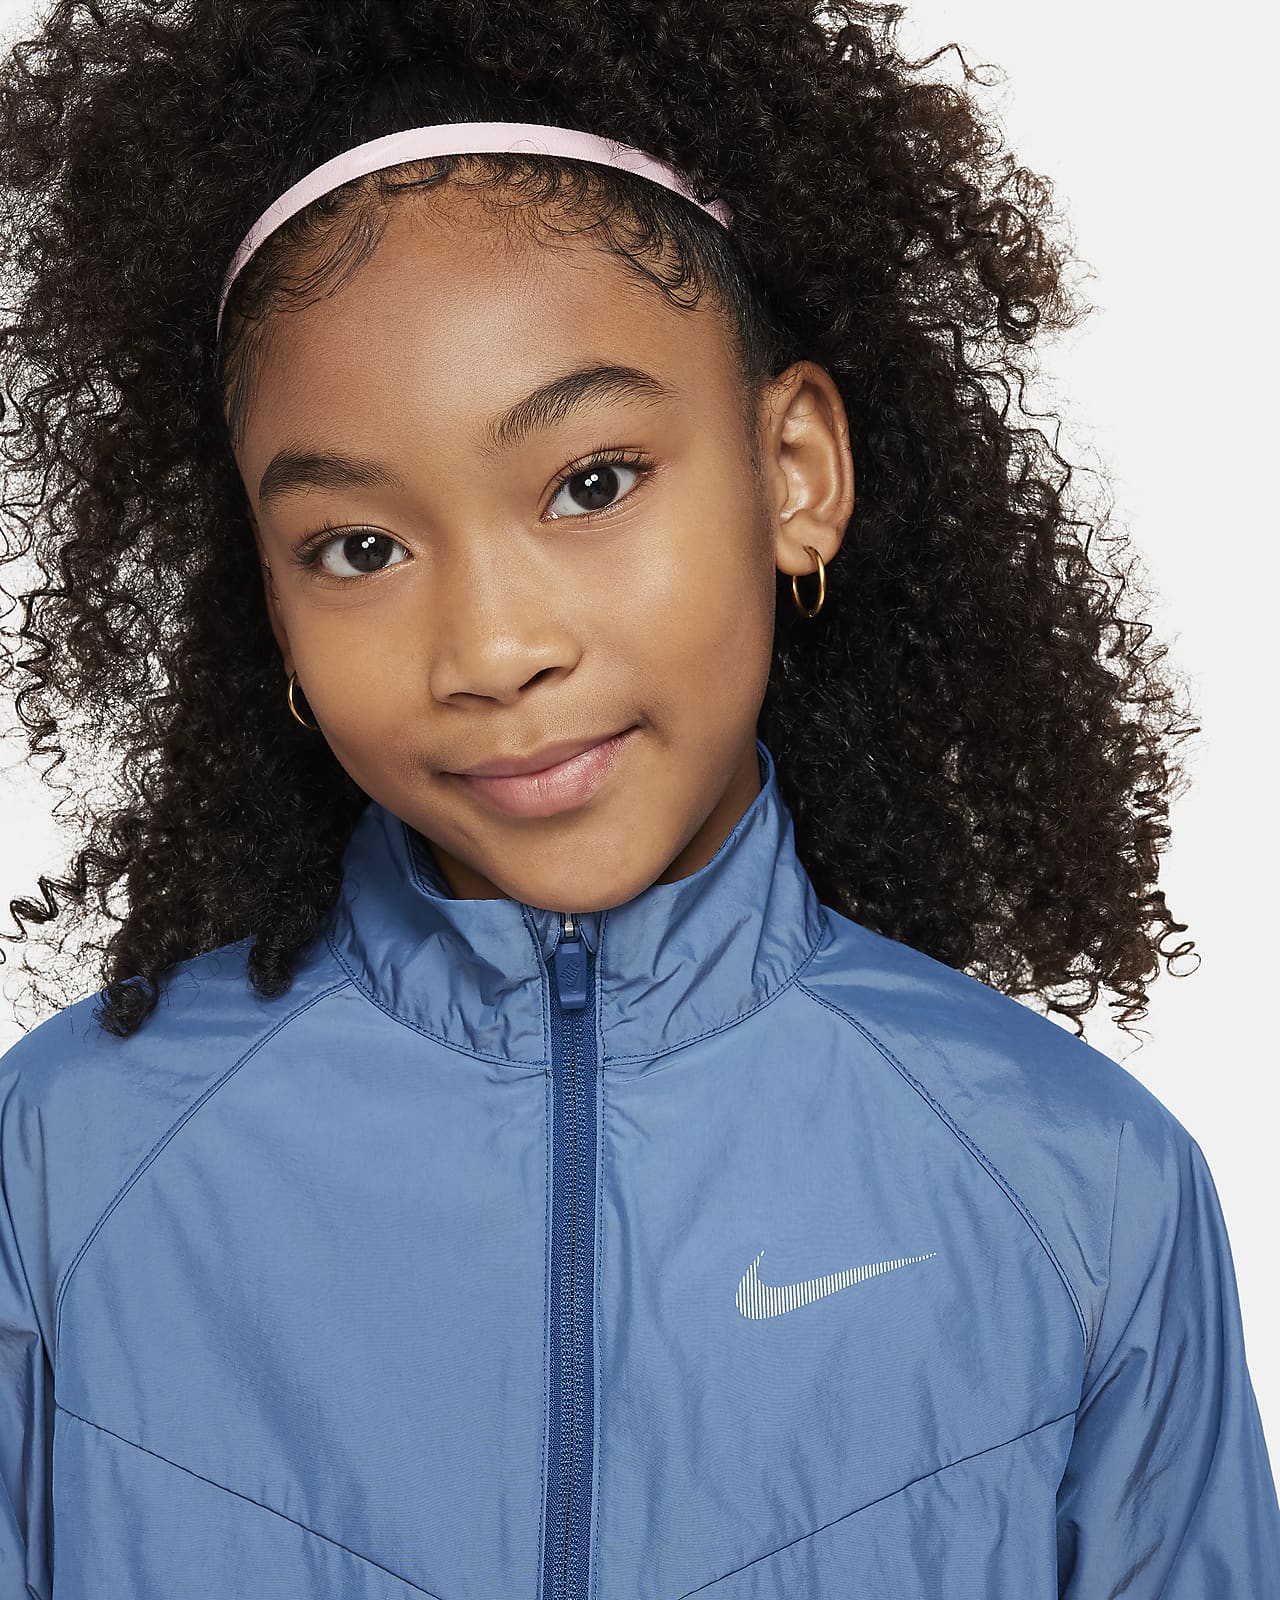 Girls' Sportswear. Nike CA